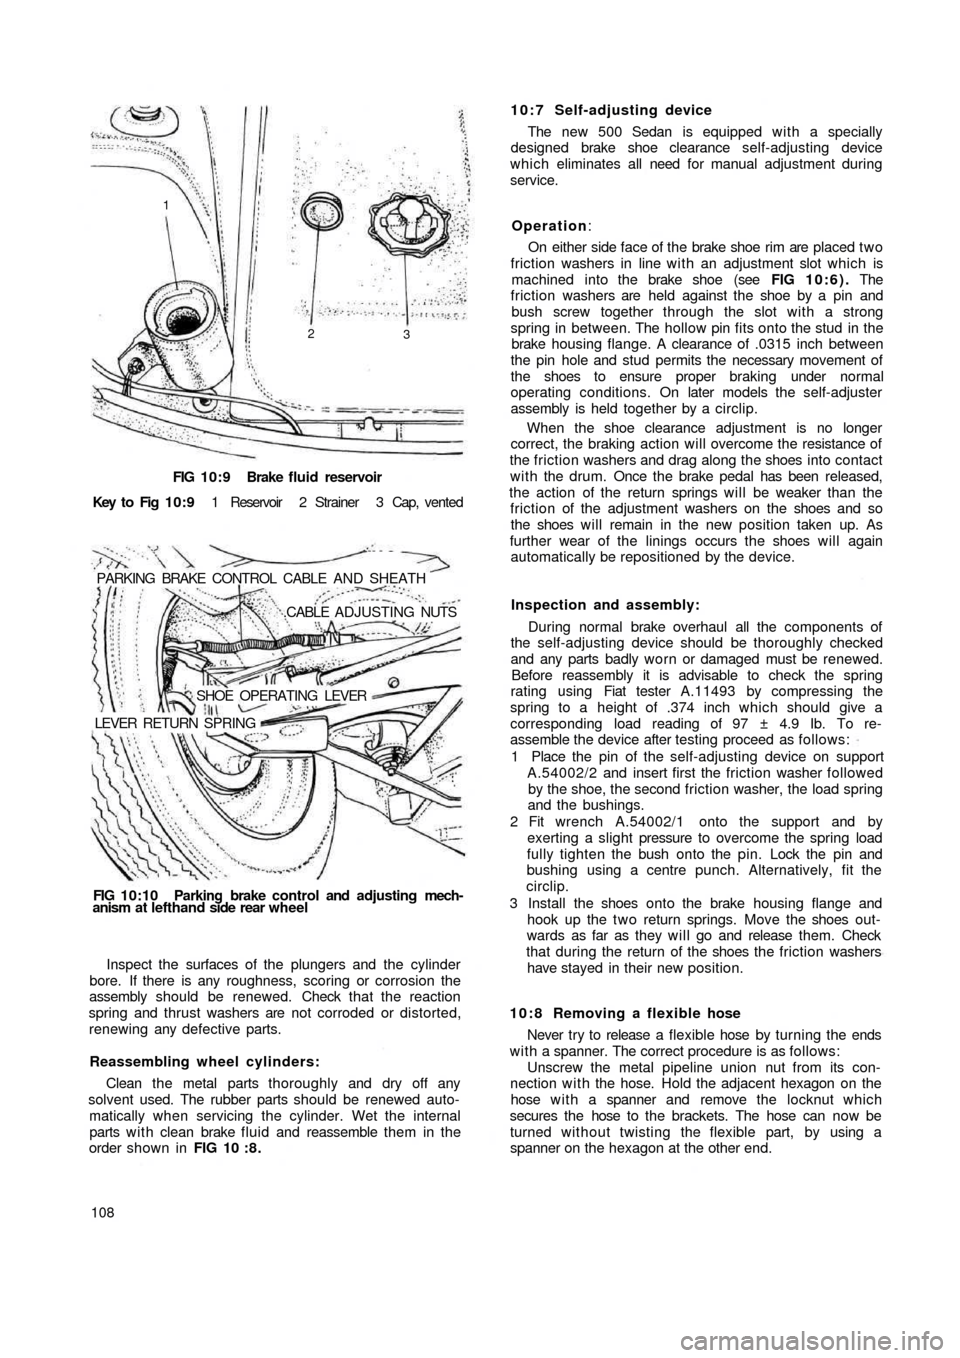 FIAT 500 1959 1.G Workshop Manual FIG 10:9 Brake  fluid reservoir
Key  to  Fig  1 0 : 9 1  Reservoir  2  Strainer  3  Cap,  vented
PARKING  BRAKE  CONTROL  CABLE  AND  SHEATH
.CABLE  ADJUSTING NUTS
SHOE  OPERATING  LEVER
LEVER  RETURN